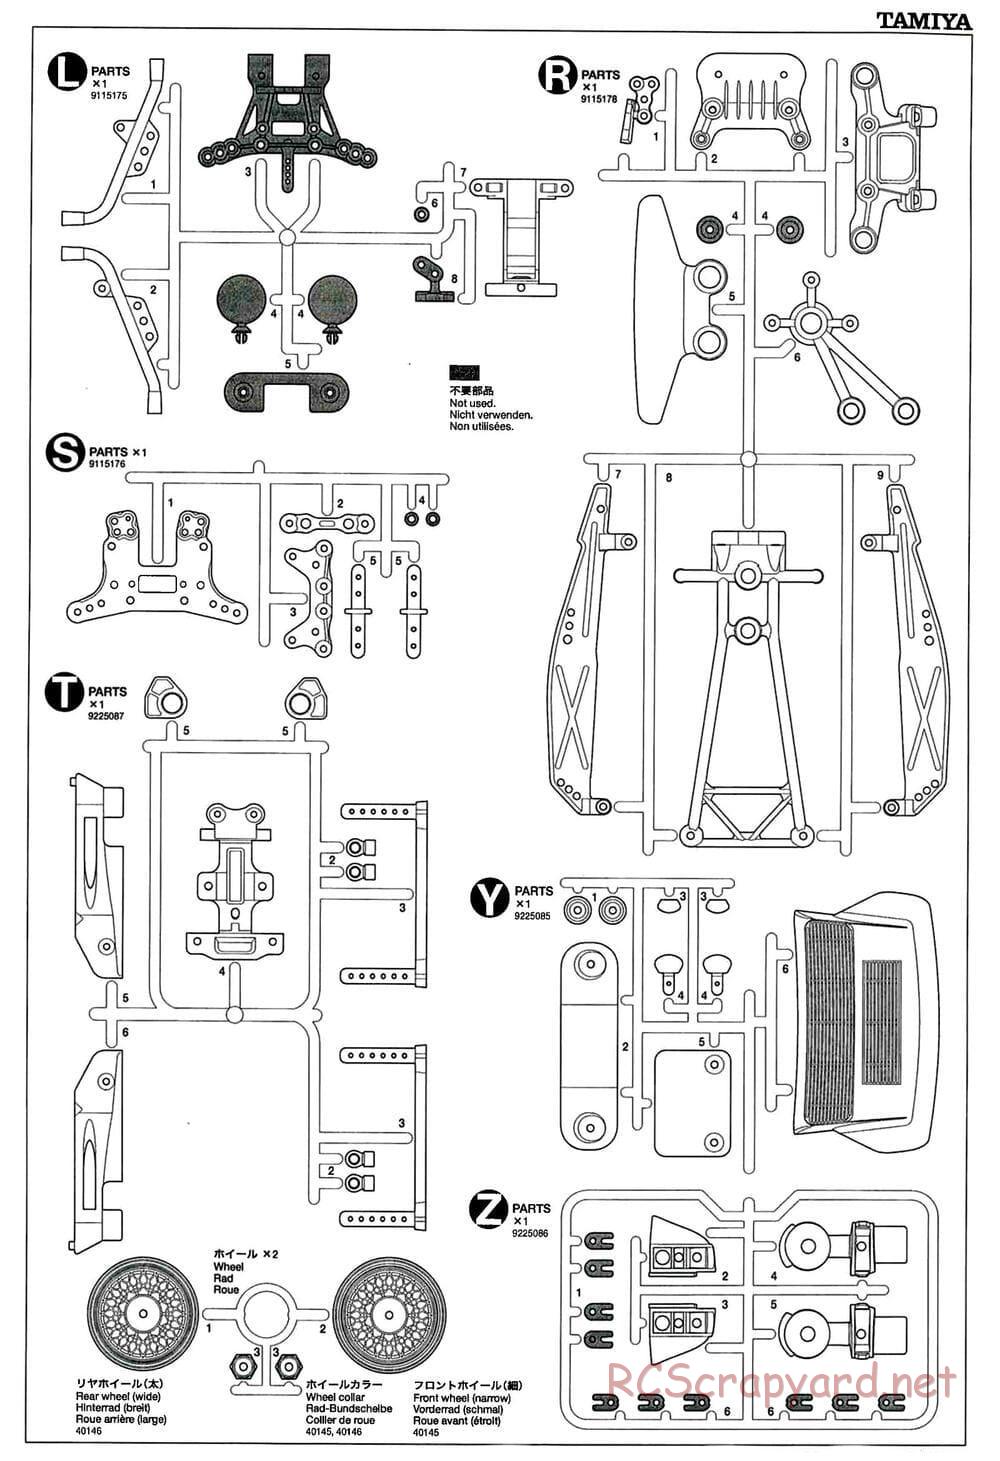 Tamiya - GT-01 Chassis - Manual - Page 20